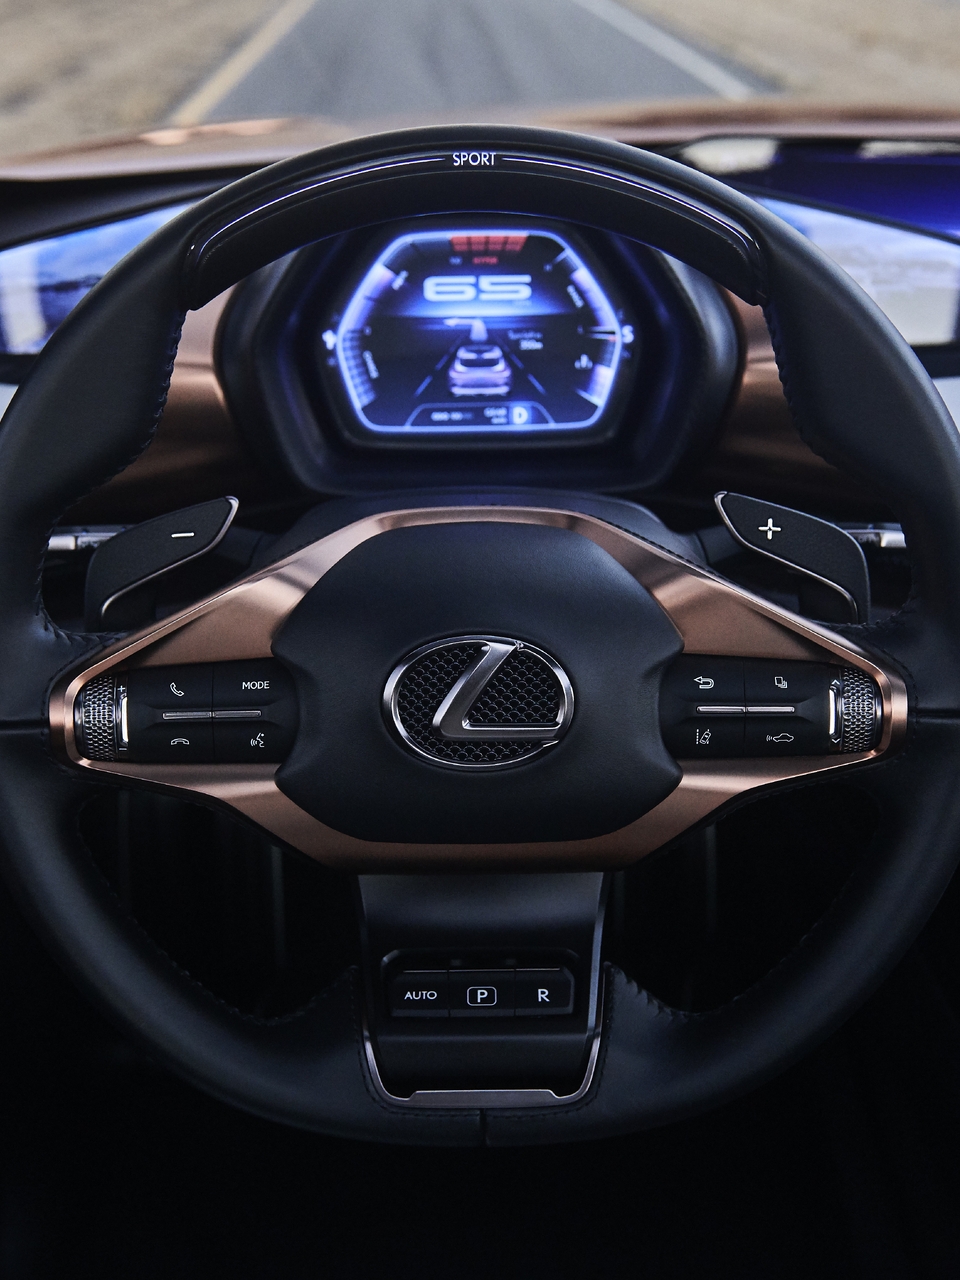 Картинка: Lexus, LF-1, Limitless, Concept, салон, руль, дисплей, дорога, кнопки, марка